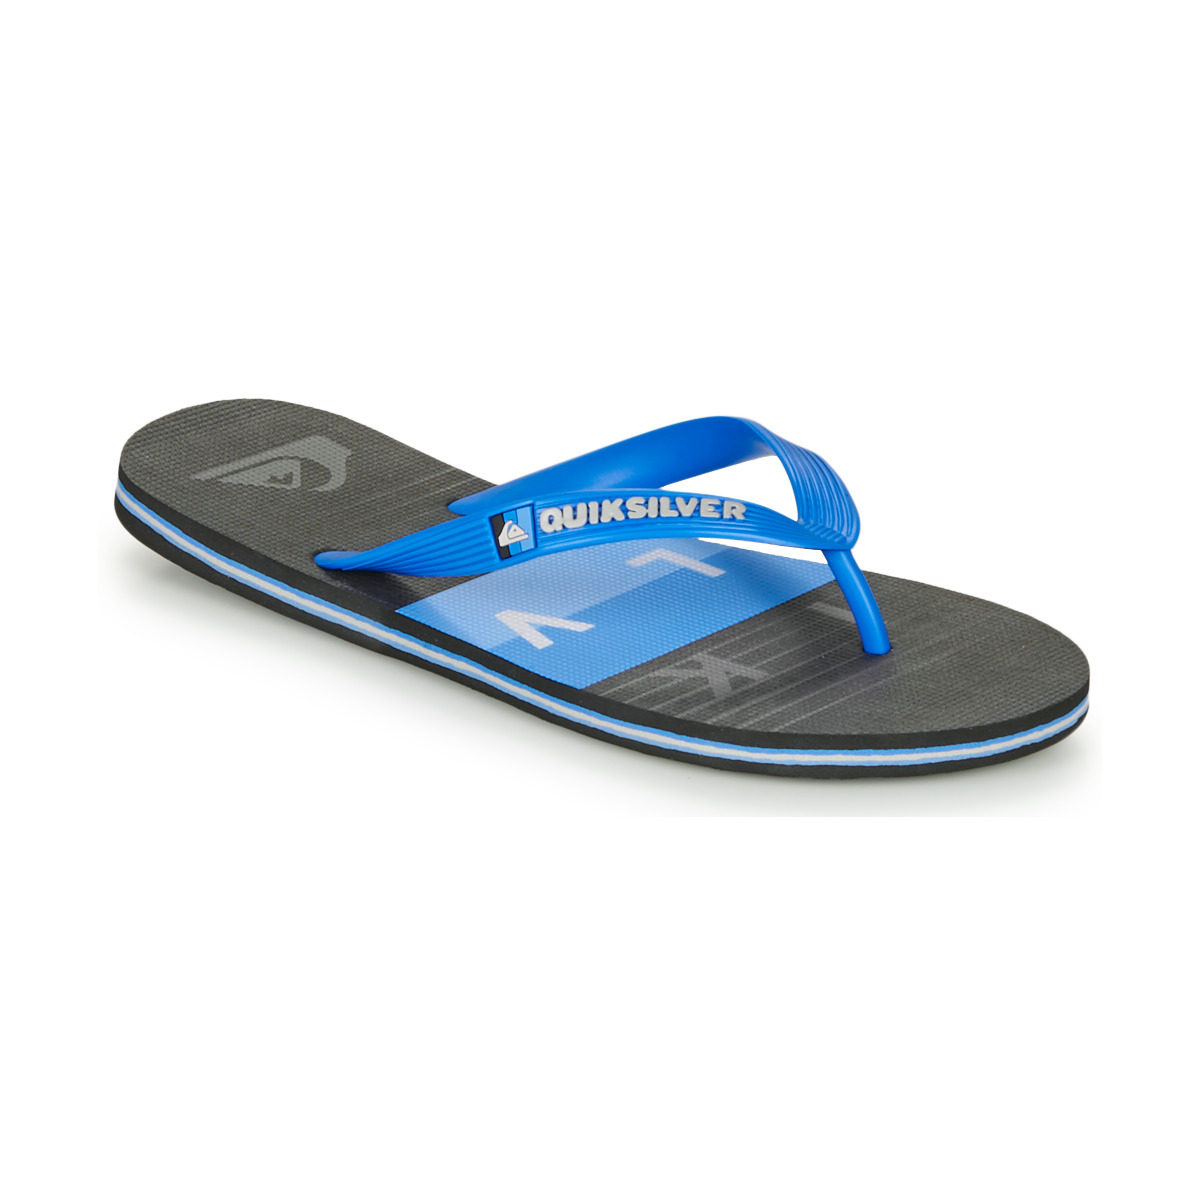 Quiksilver - Men's Blue Flip Flops from Spartoo GOOFASH